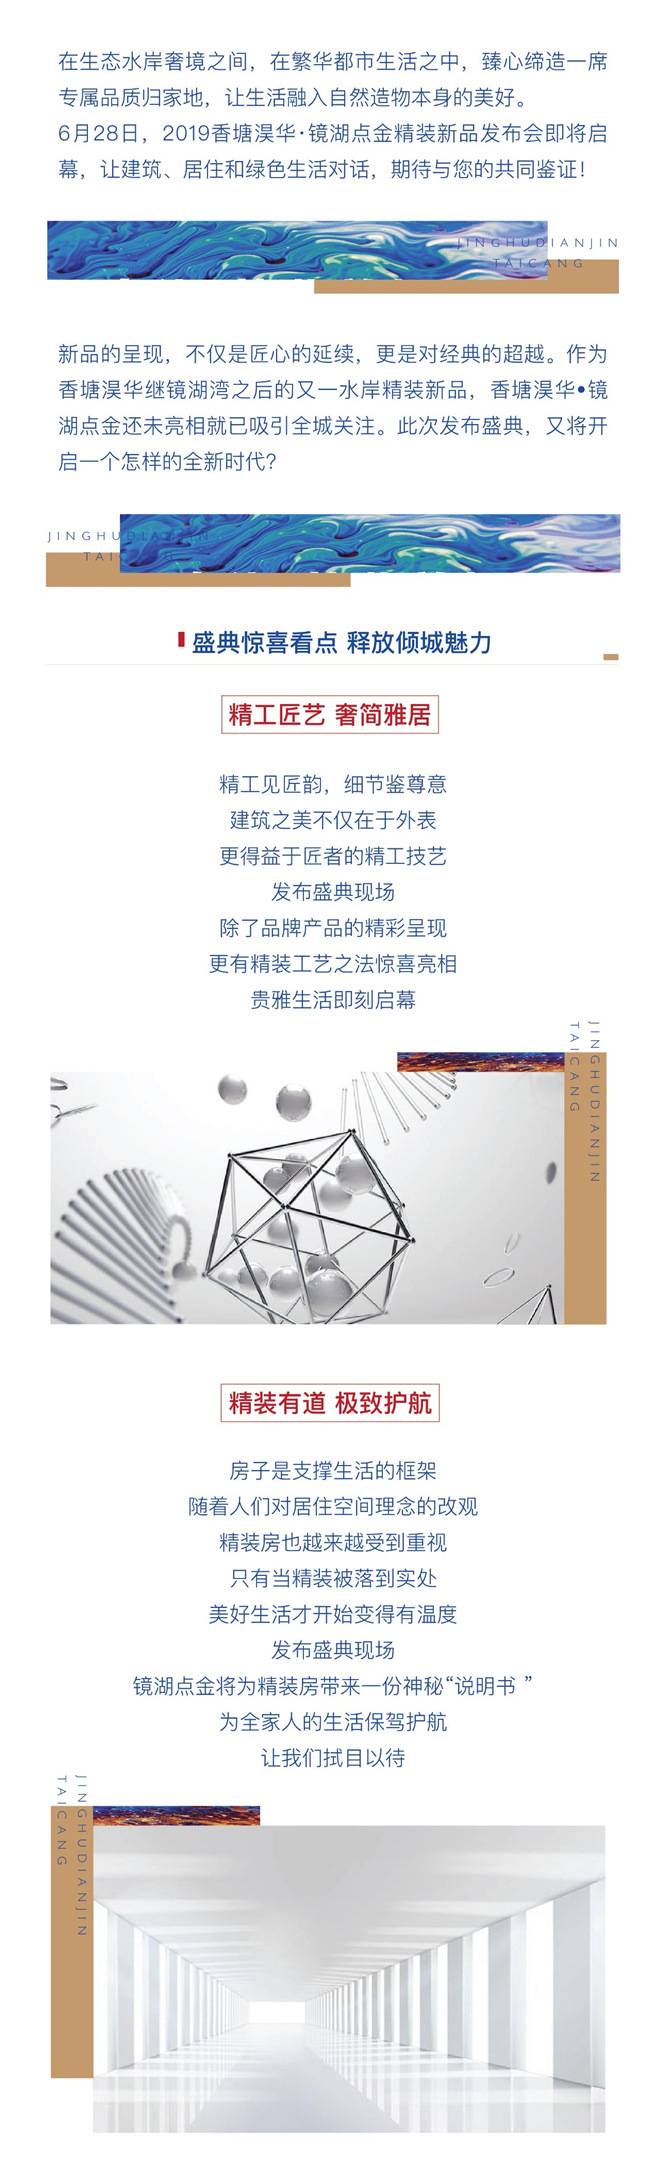 2019香塘淏华·镜湖点金精装新品发布会 全城预约